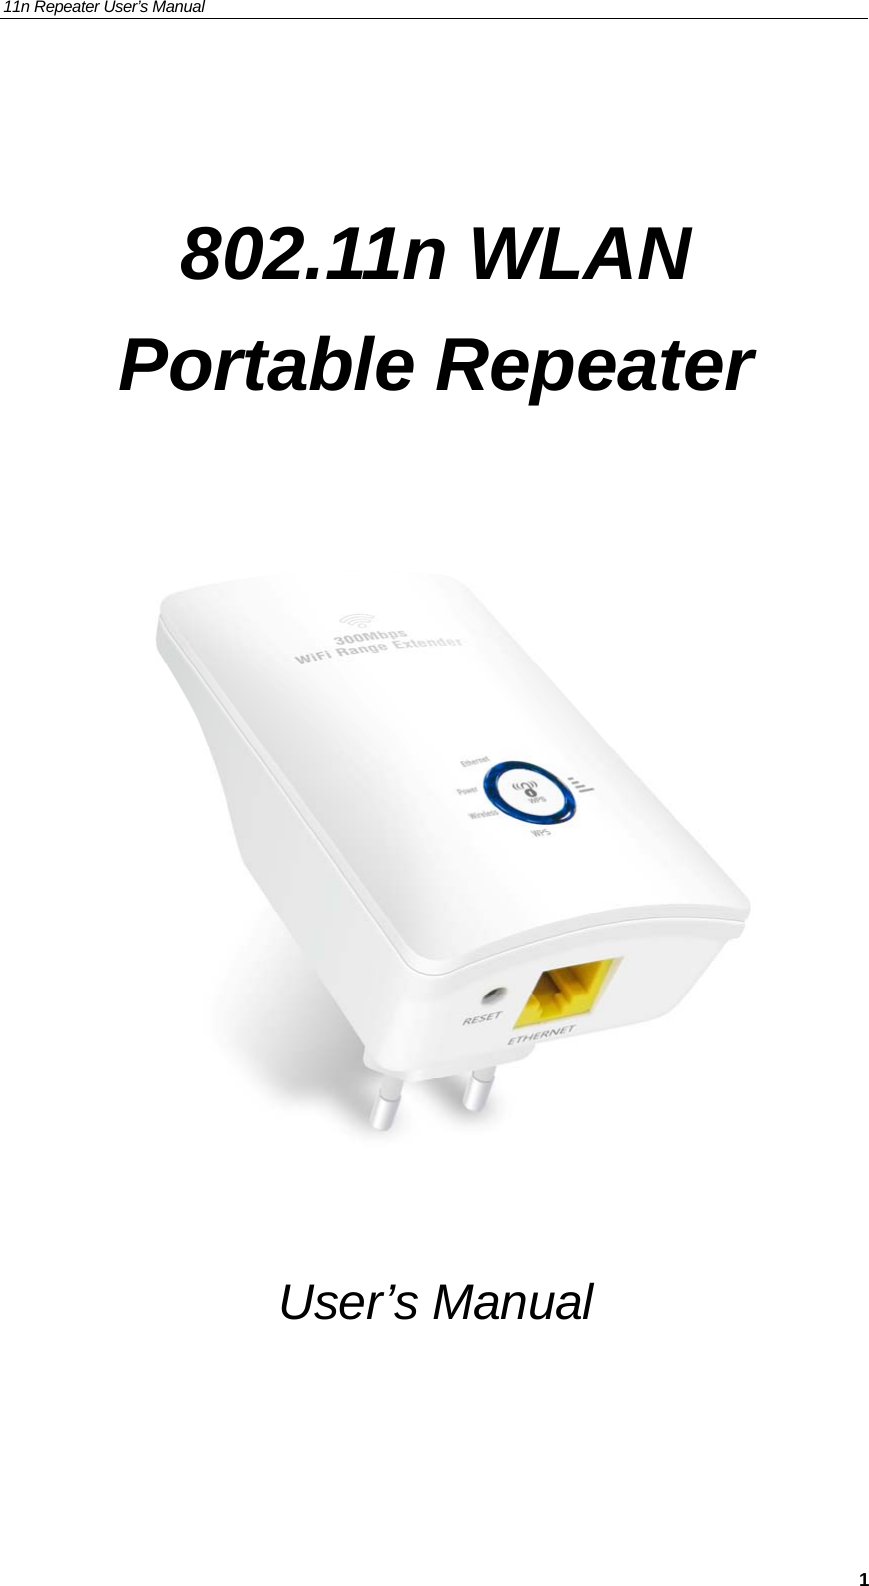 11n Repeater User’s Manual     1 802.11n WLAN  Portable Repeater        User’s Manual 